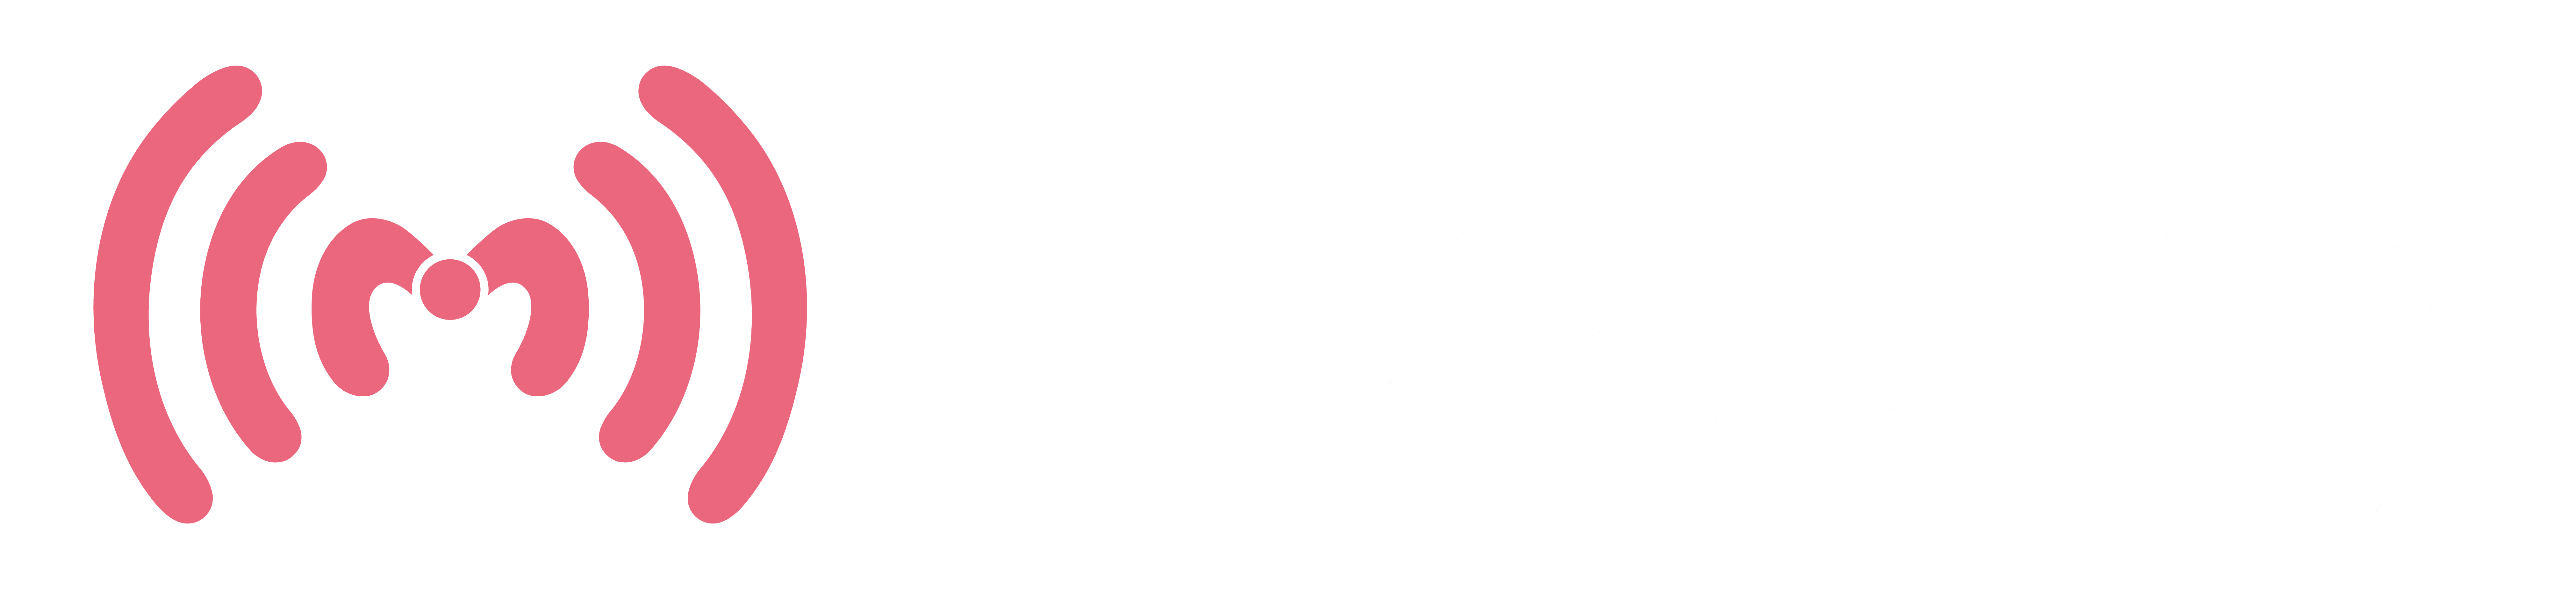 distribuidores-moviloop